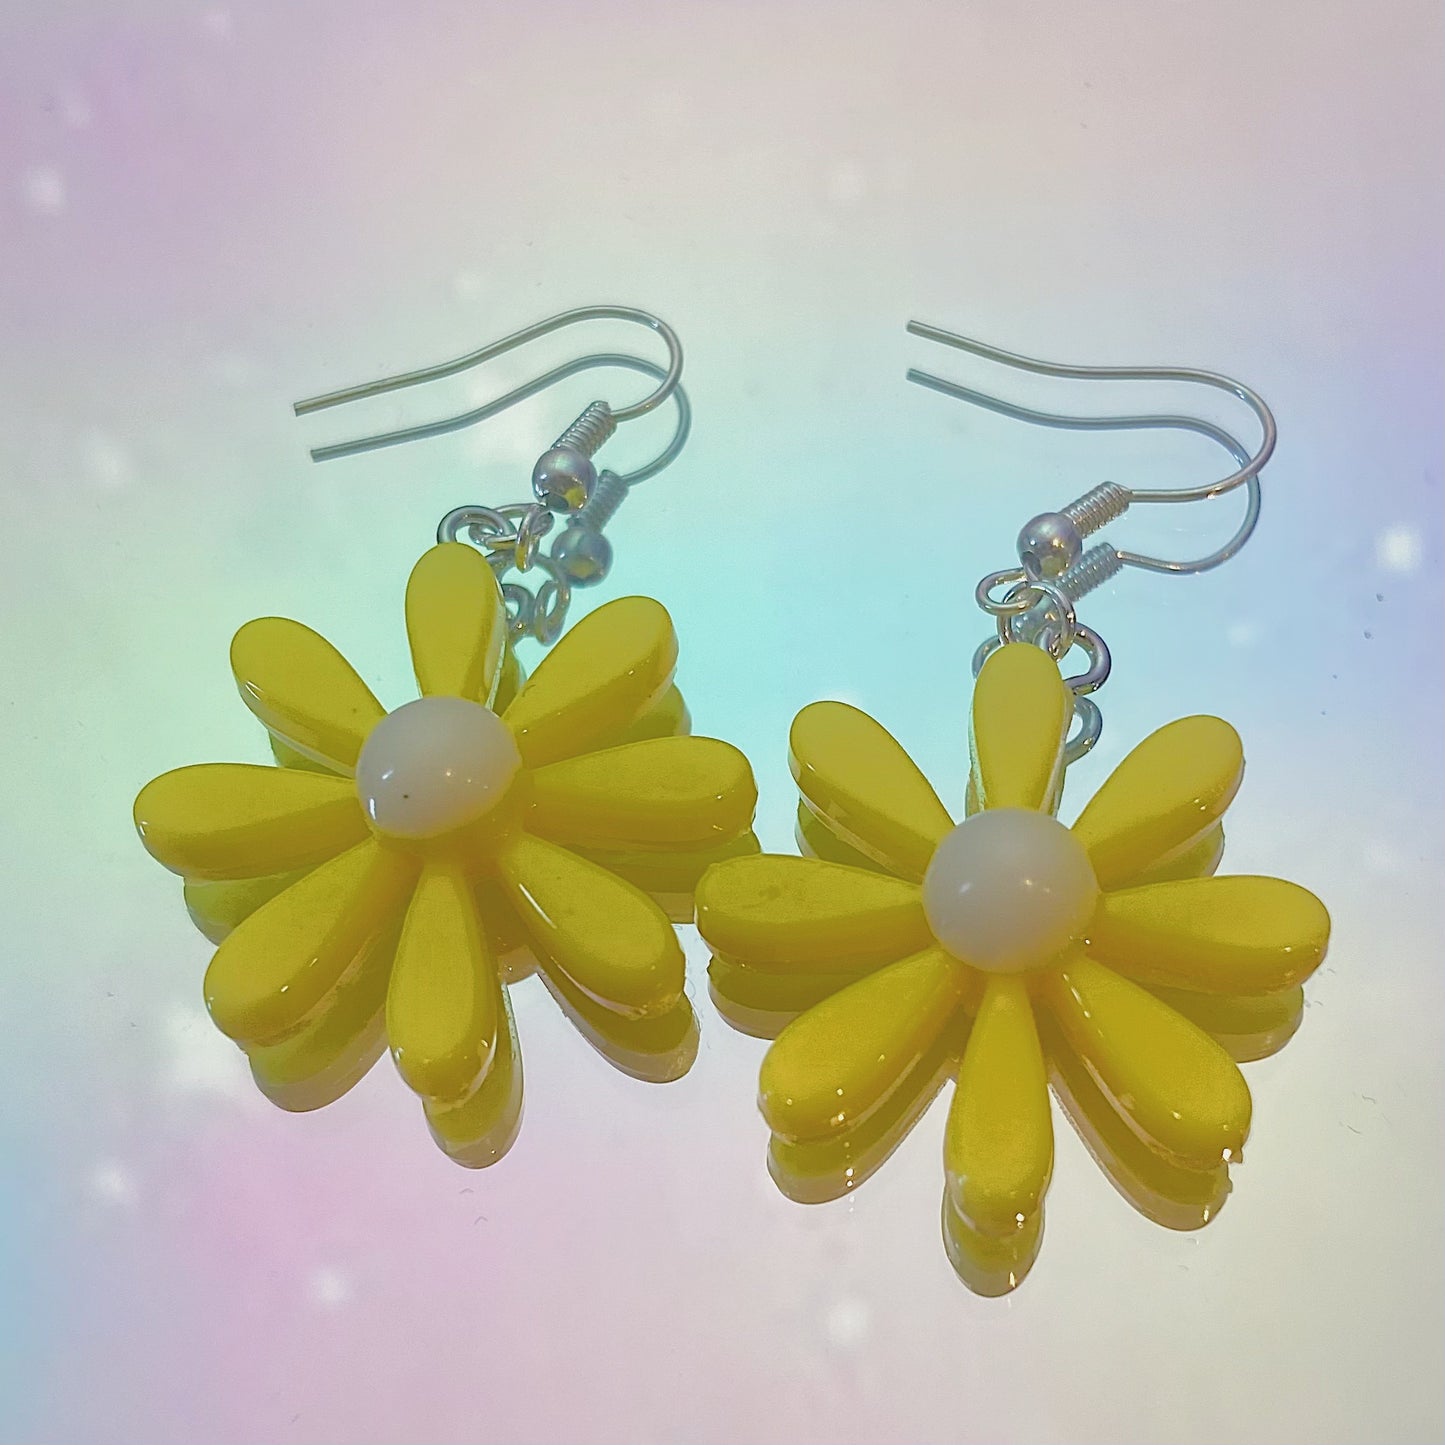 Yellow Daisy Earrings